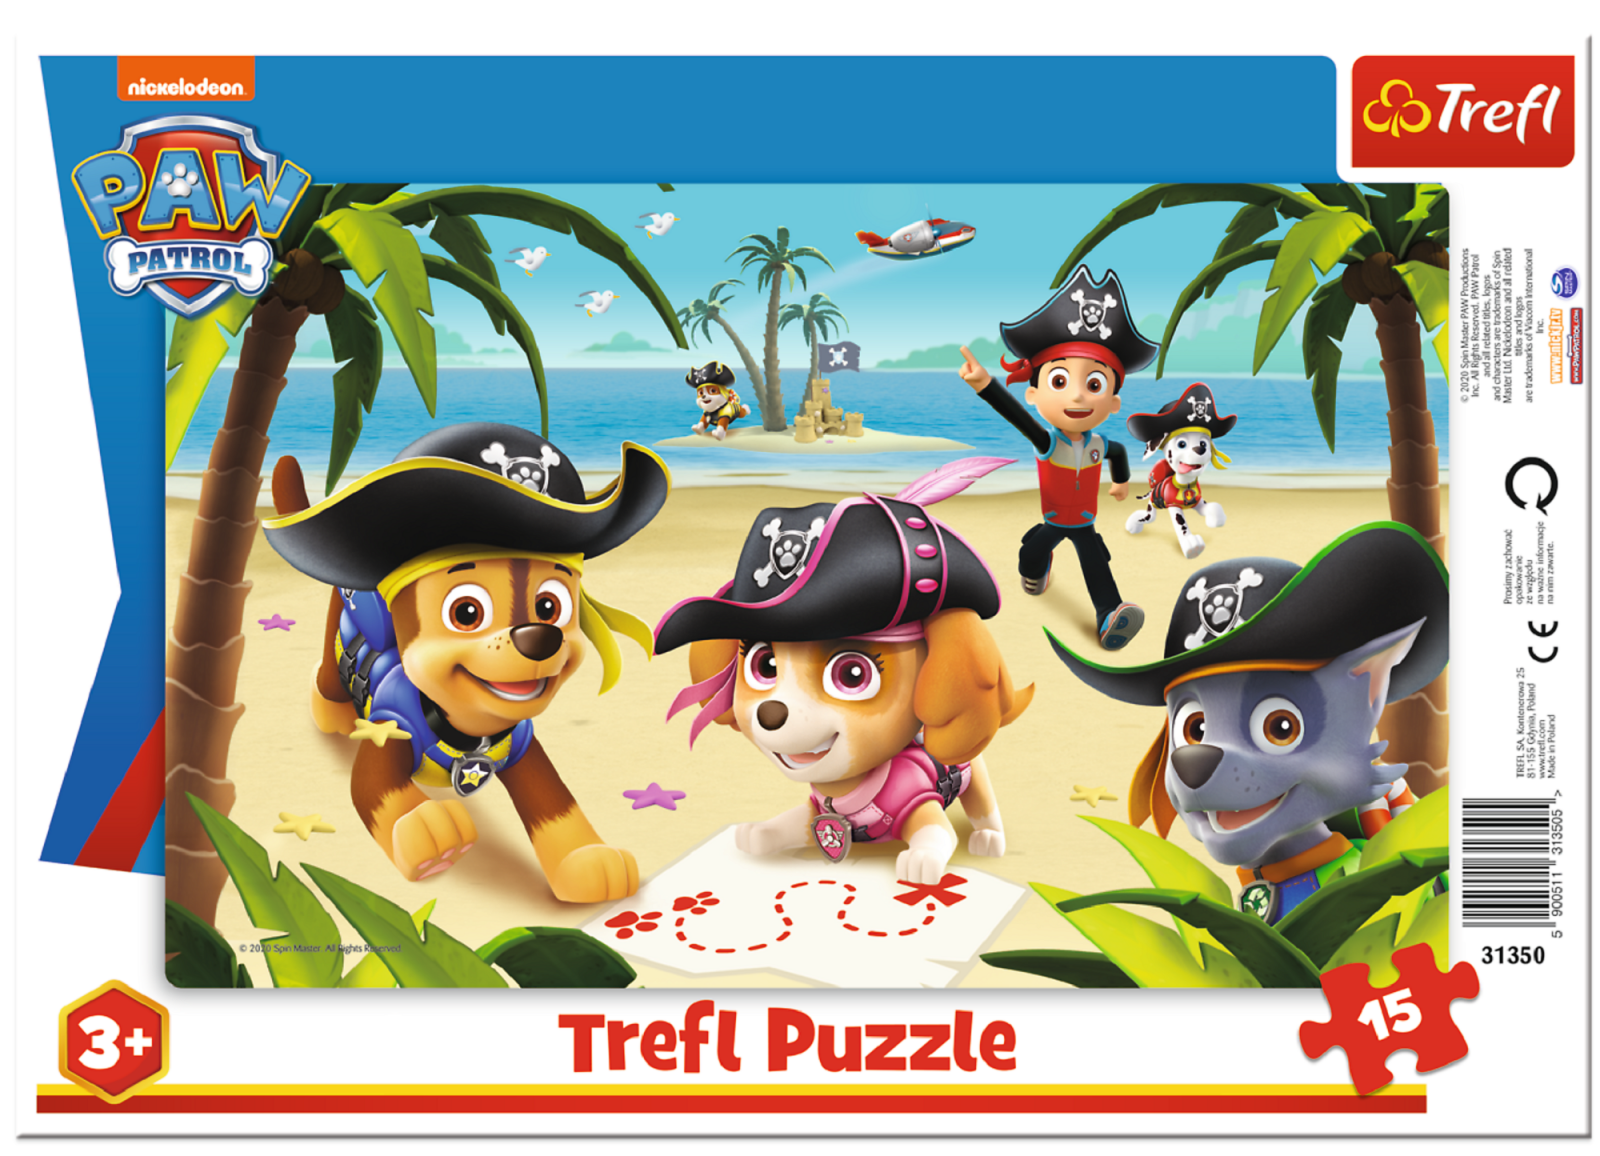 15 dílků Paw Patrol - puzzle v rámečku ( rámkové ) puzzle Trefl 31350